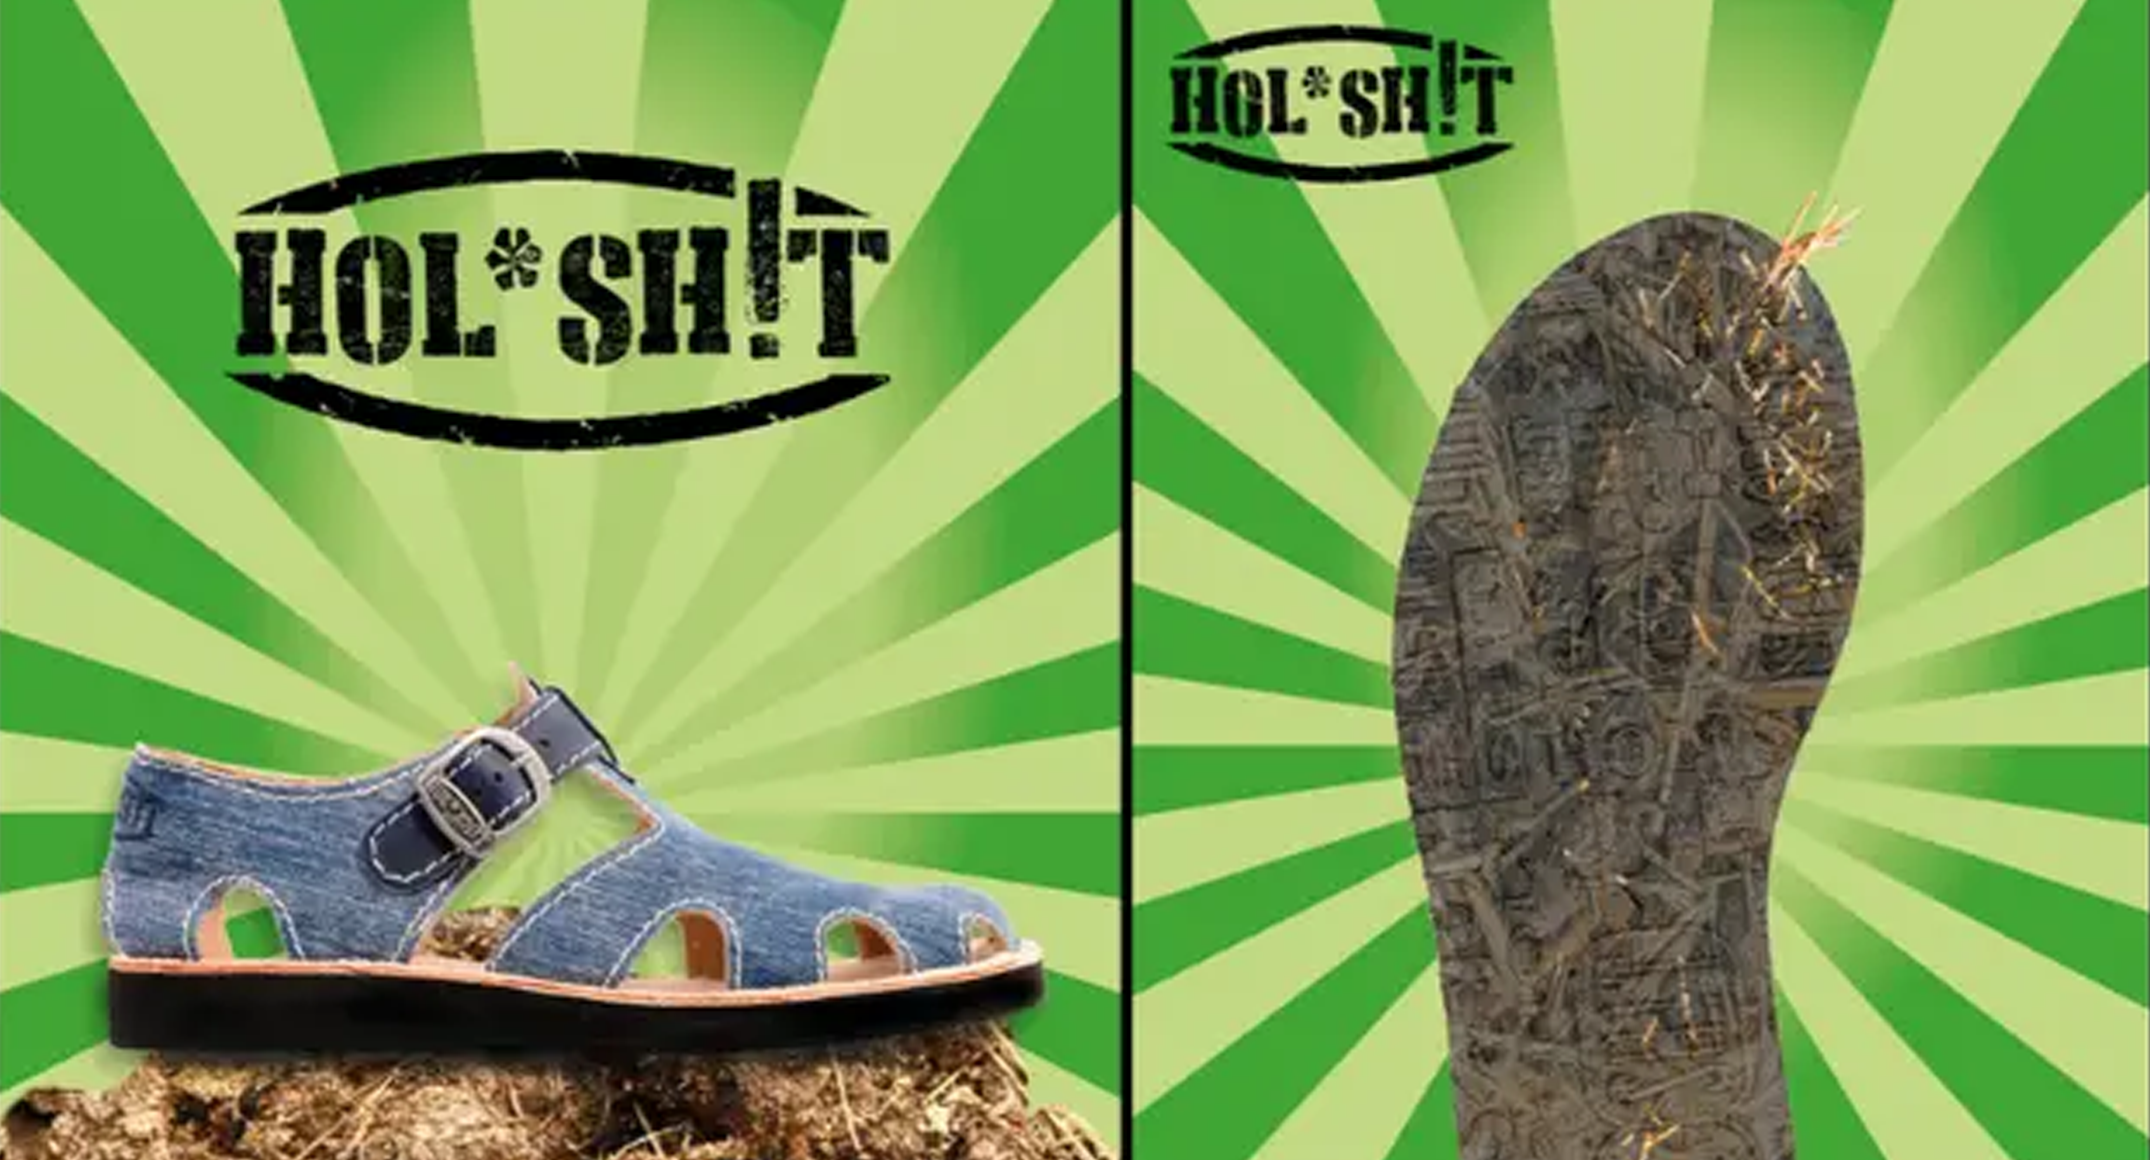 Hol* Sh!t komt met geheel nieuwe en eigen techniek sandalen van gefermenteerd mest